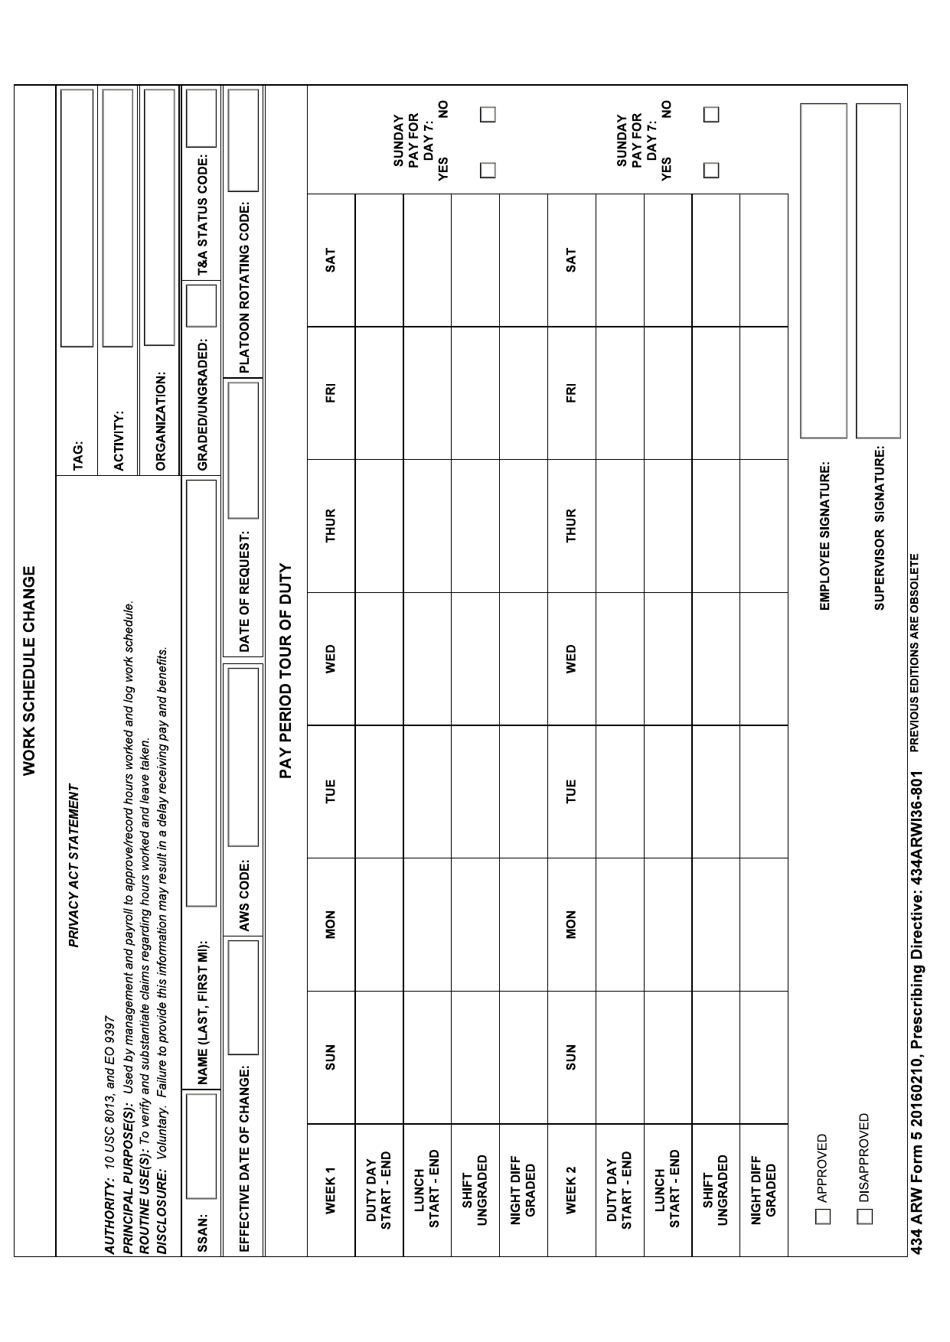 434 ARW Form 5 Work Schedule Change, Page 1